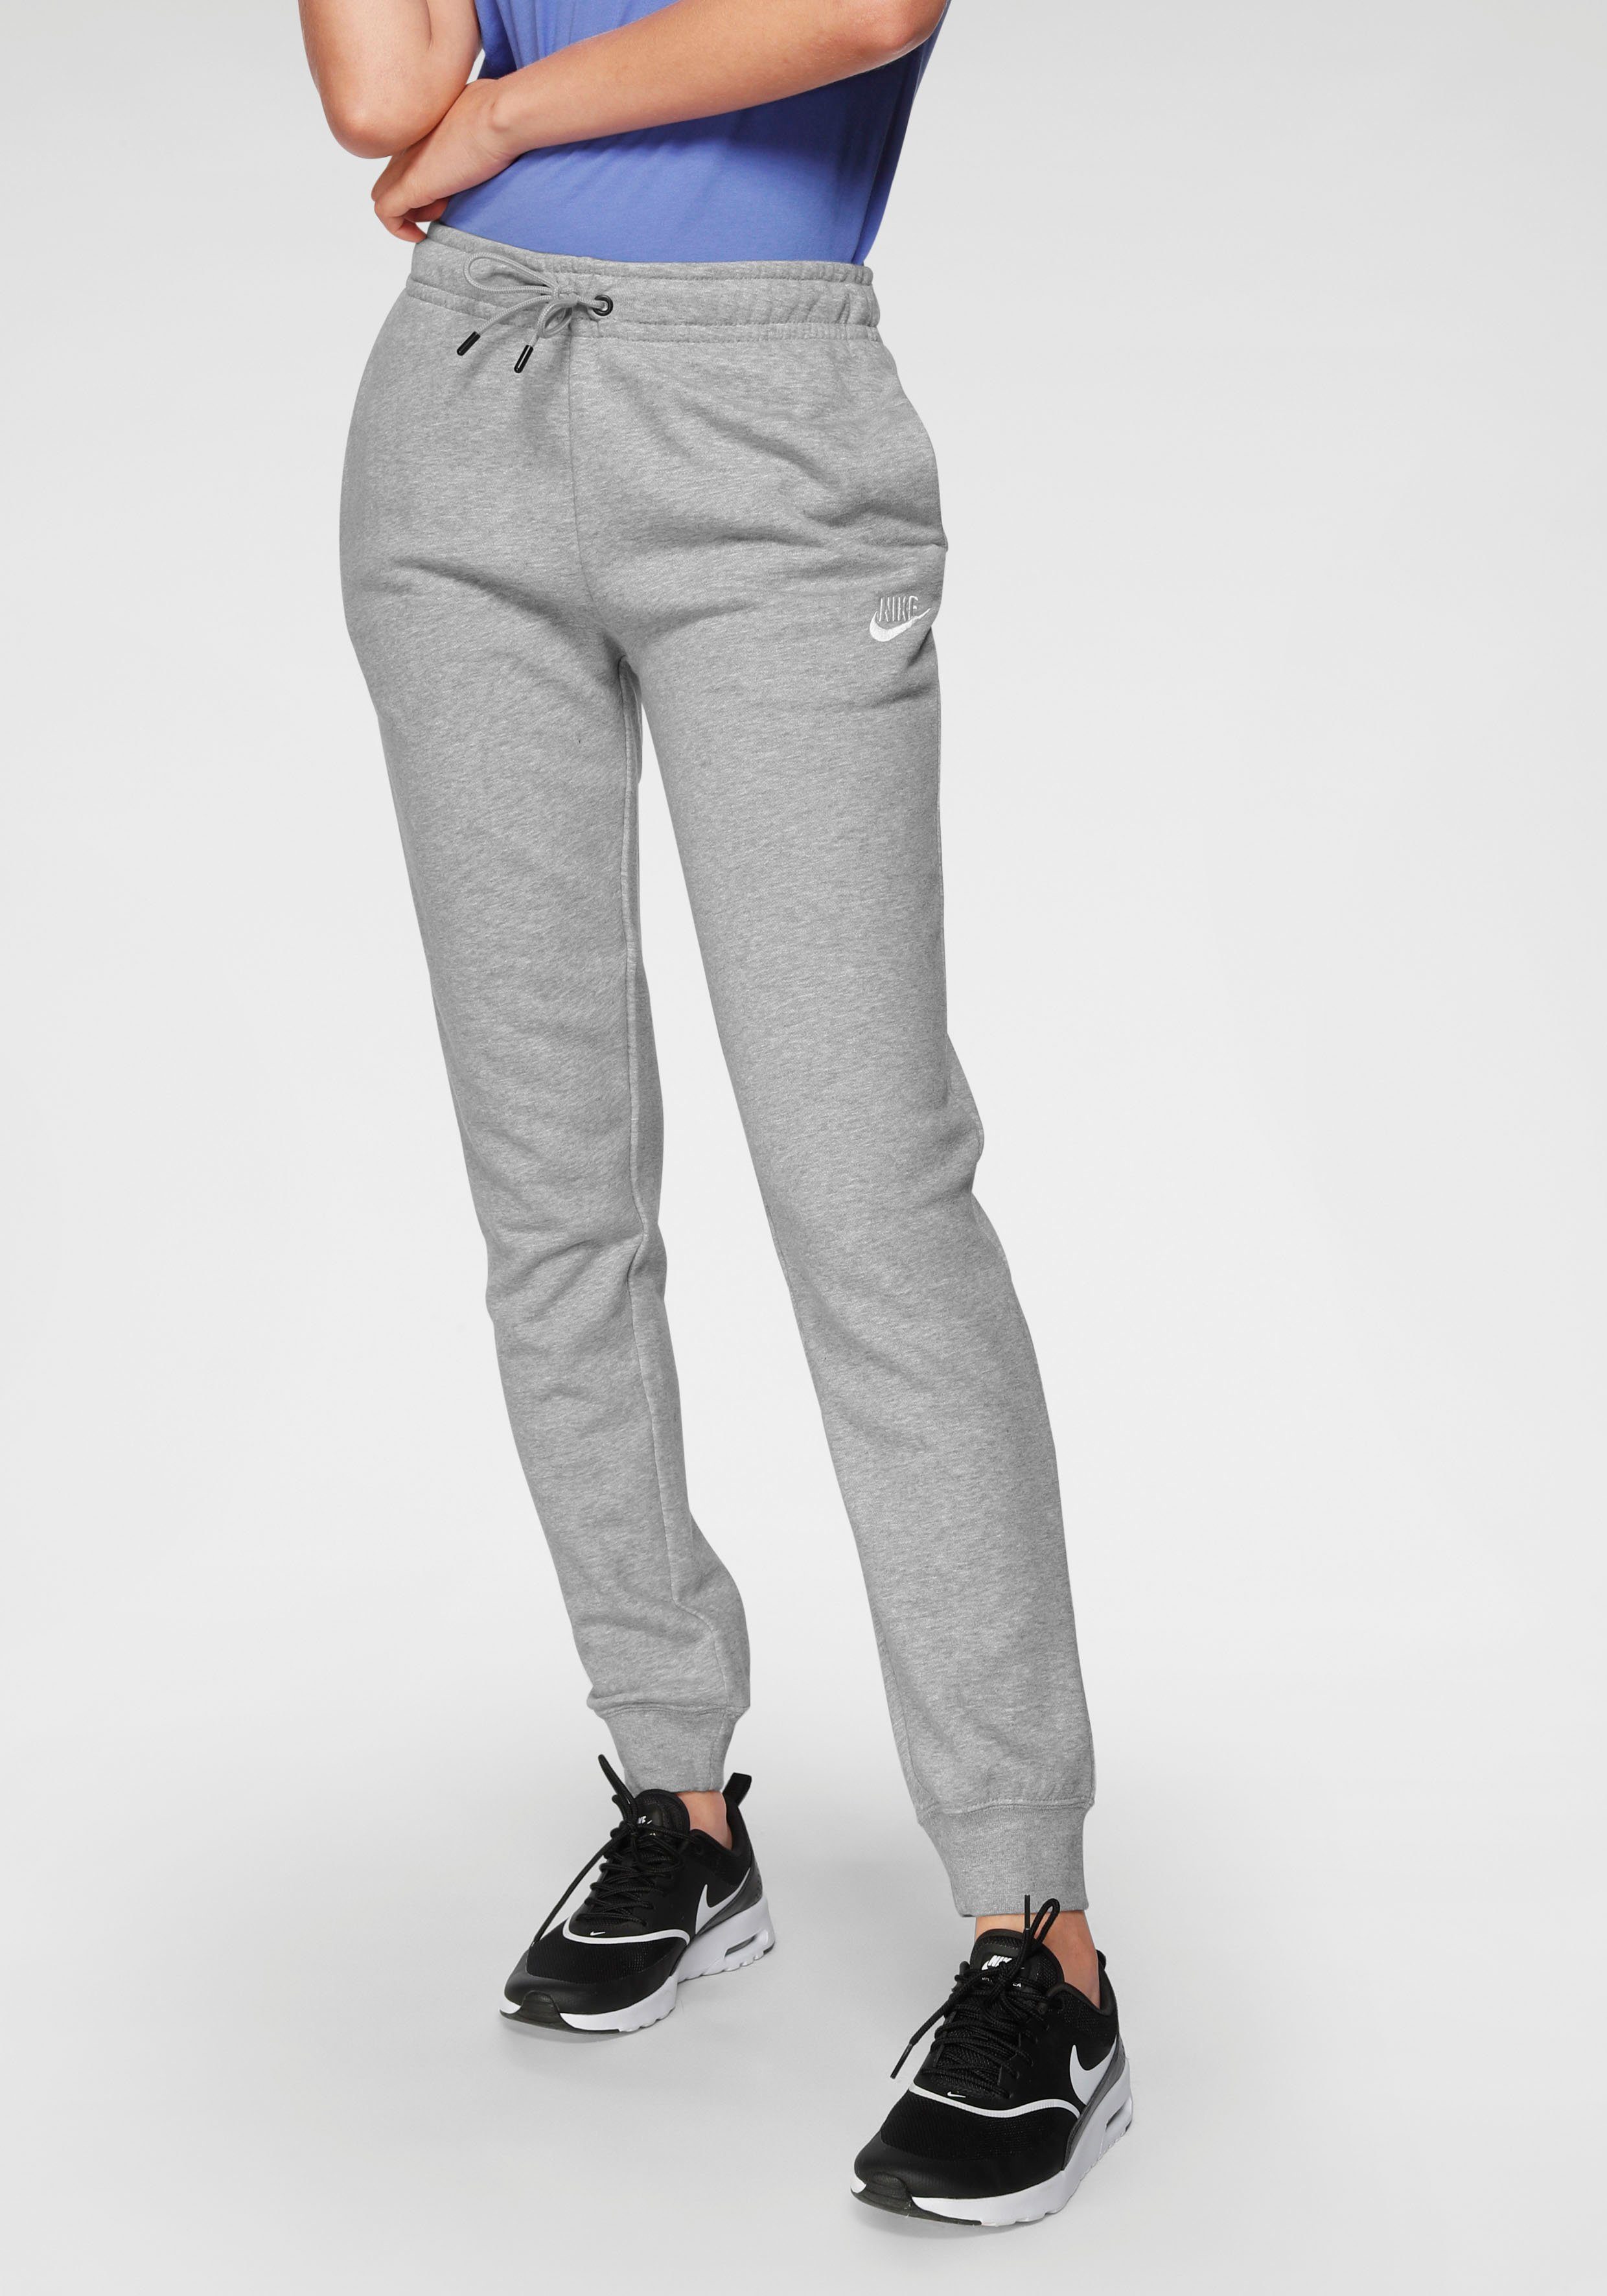 Nike WOMENS PANTS grau-meliert FLEECE Jogginghose Sportswear ESSENTIAL